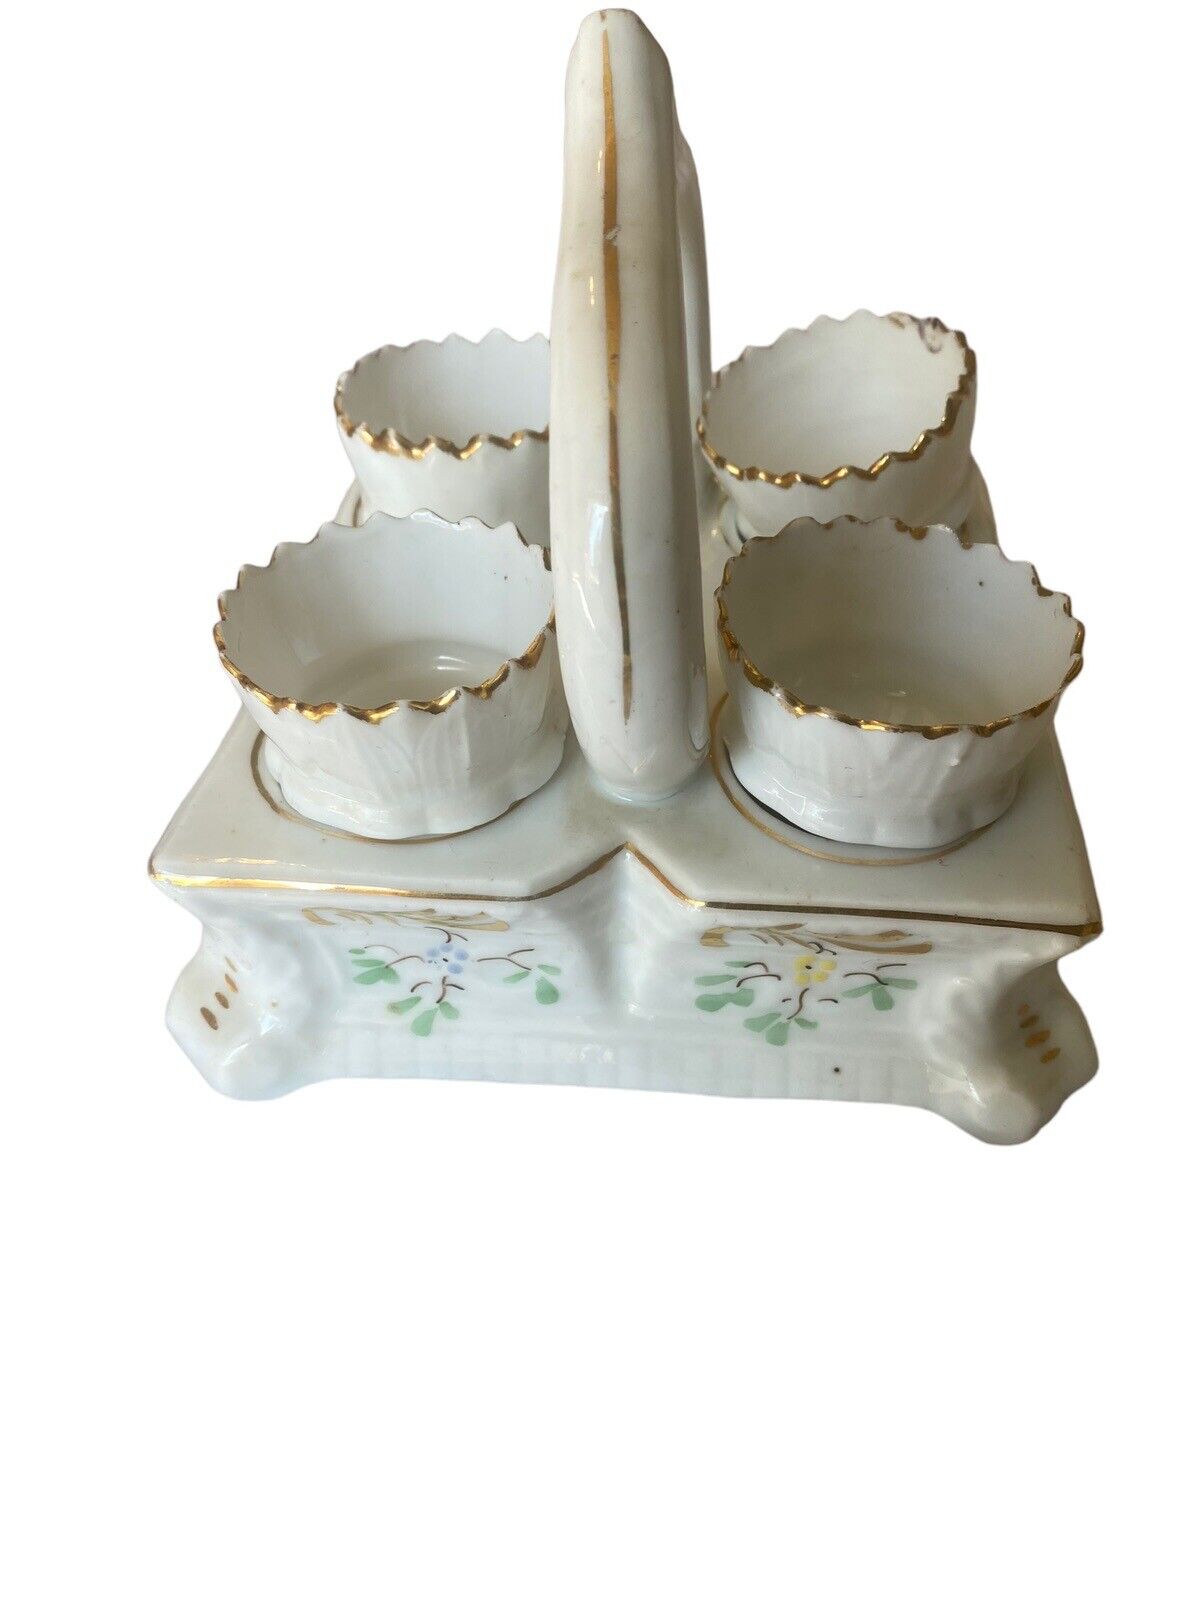 Porcelain Ceramic Egg Cup Holder 4 Egg Cups Floral Design Gold Trim Vintage